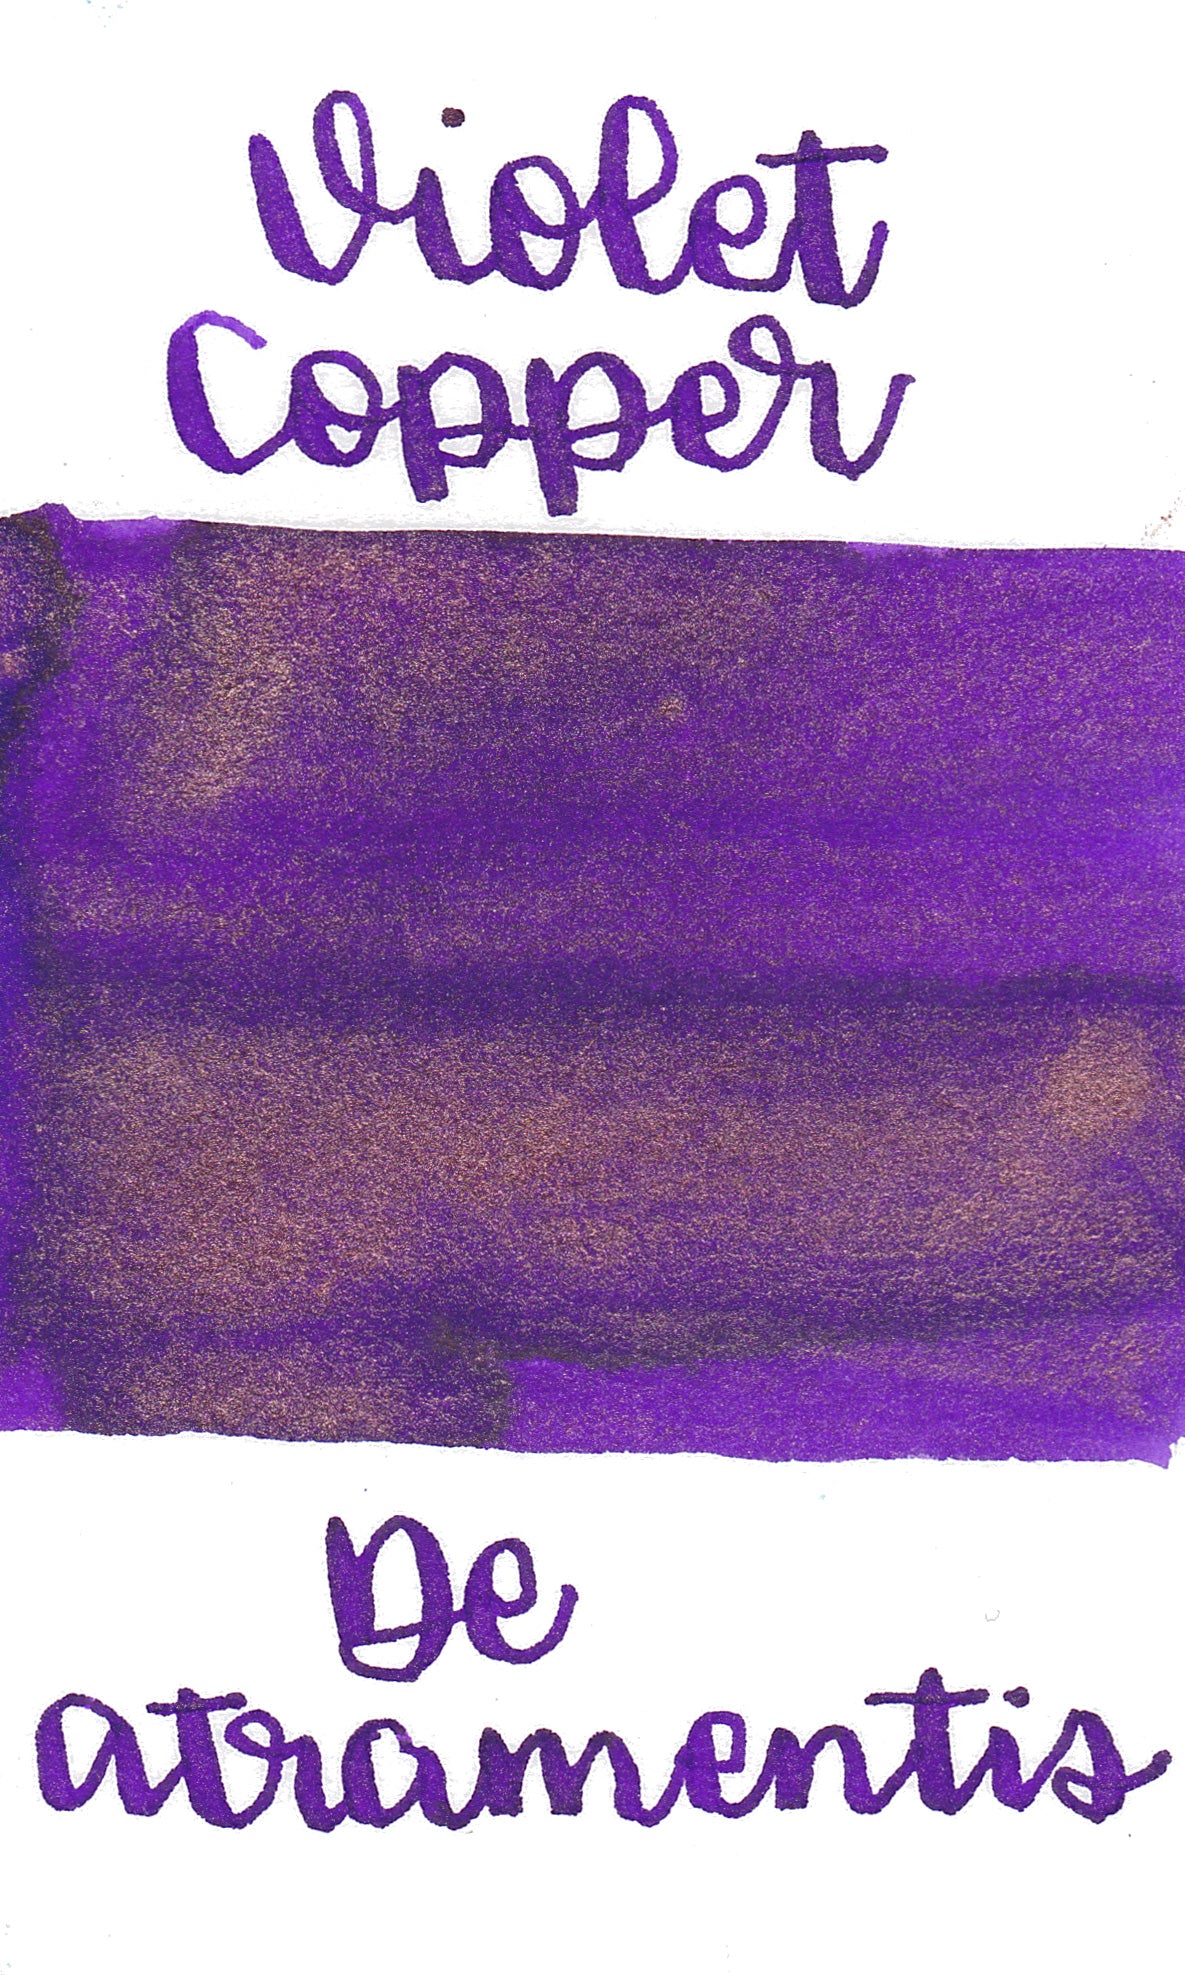 De Atramentis Pearlescent Brilliant Violet Copper